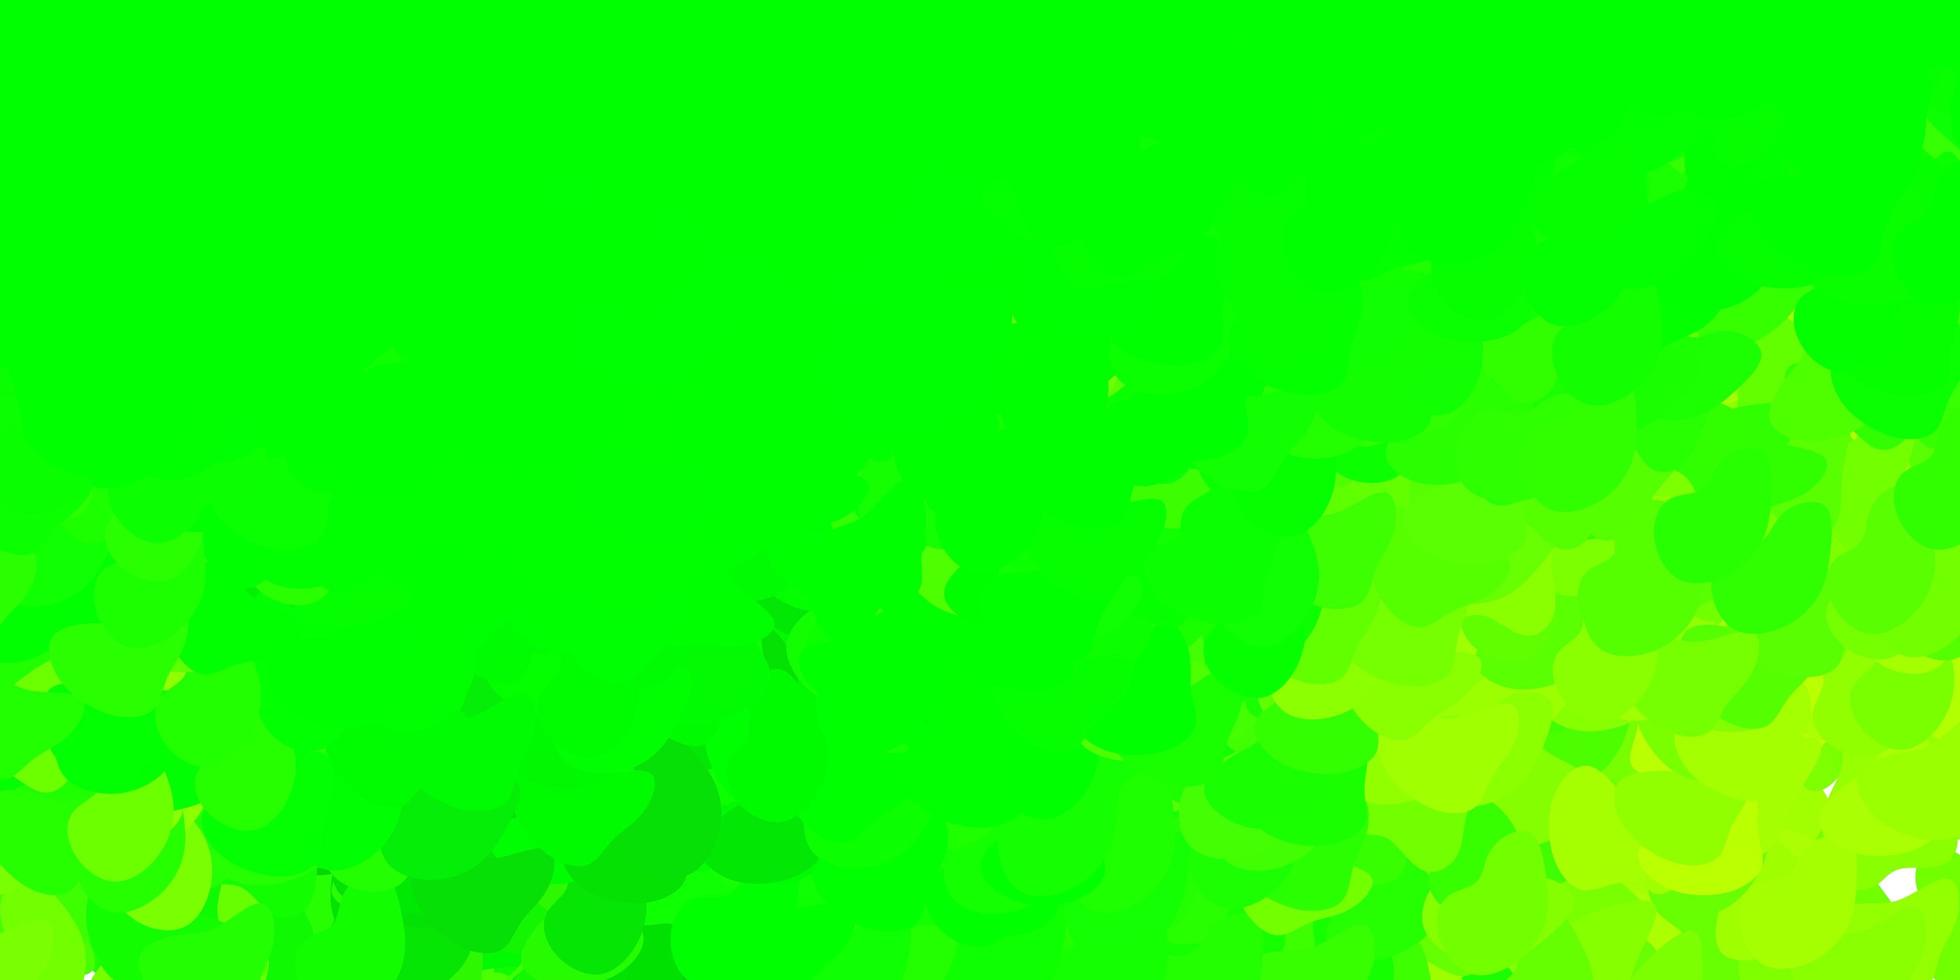 sfondo vettoriale verde chiaro, giallo con forme caotiche.